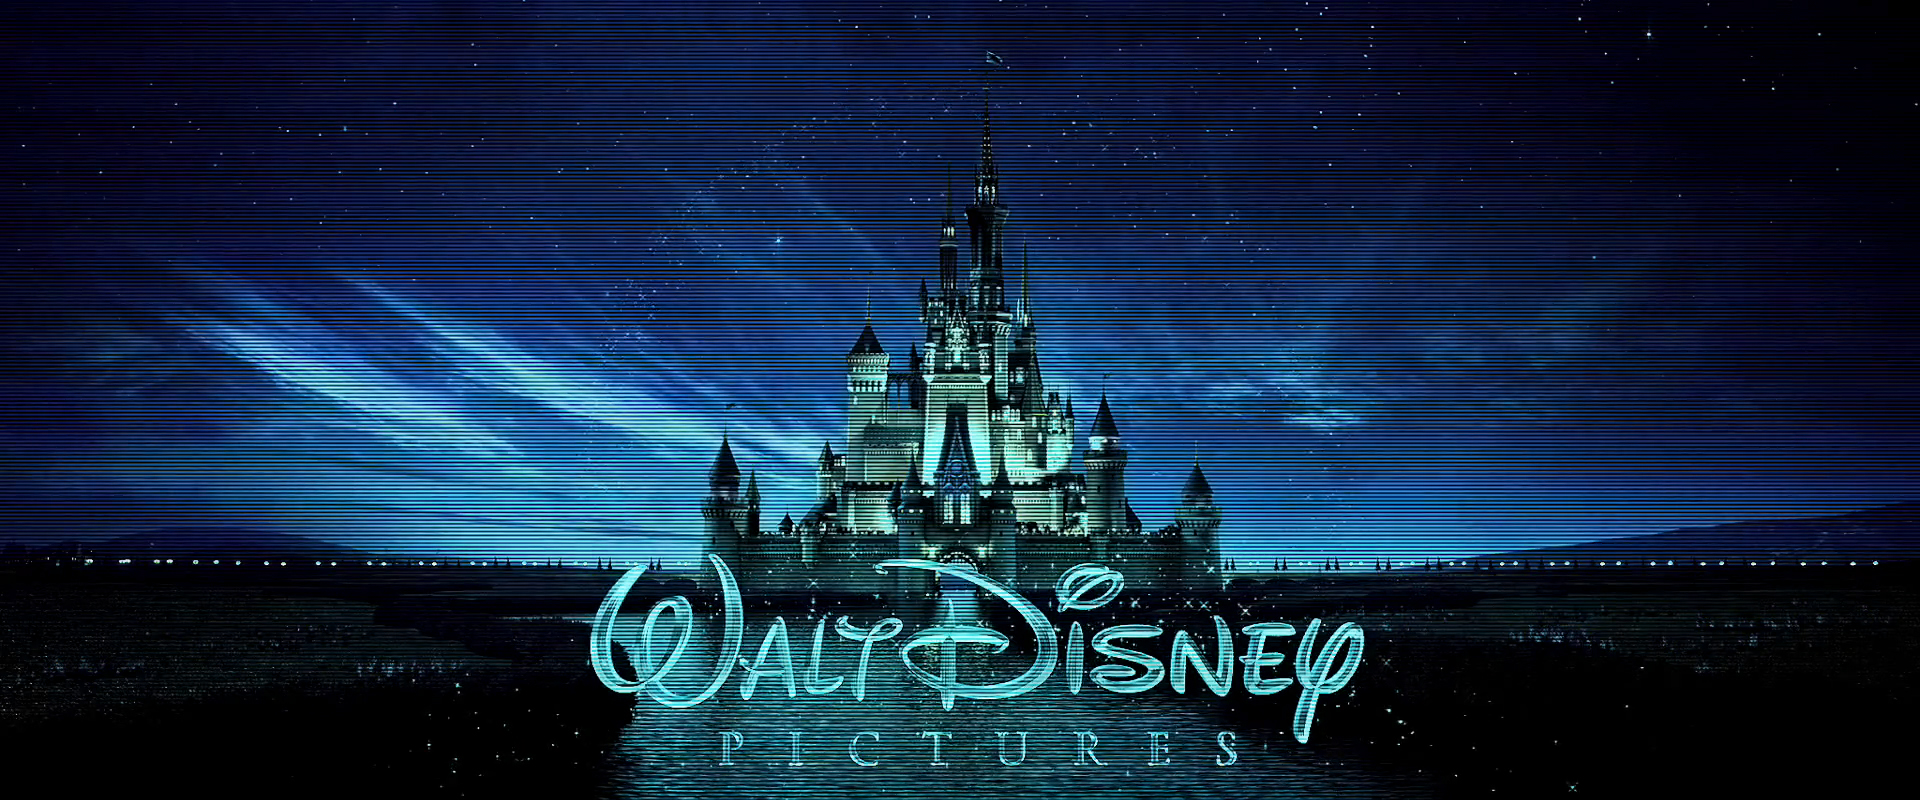 Descargar fondos de escritorio de Walt Disney HD